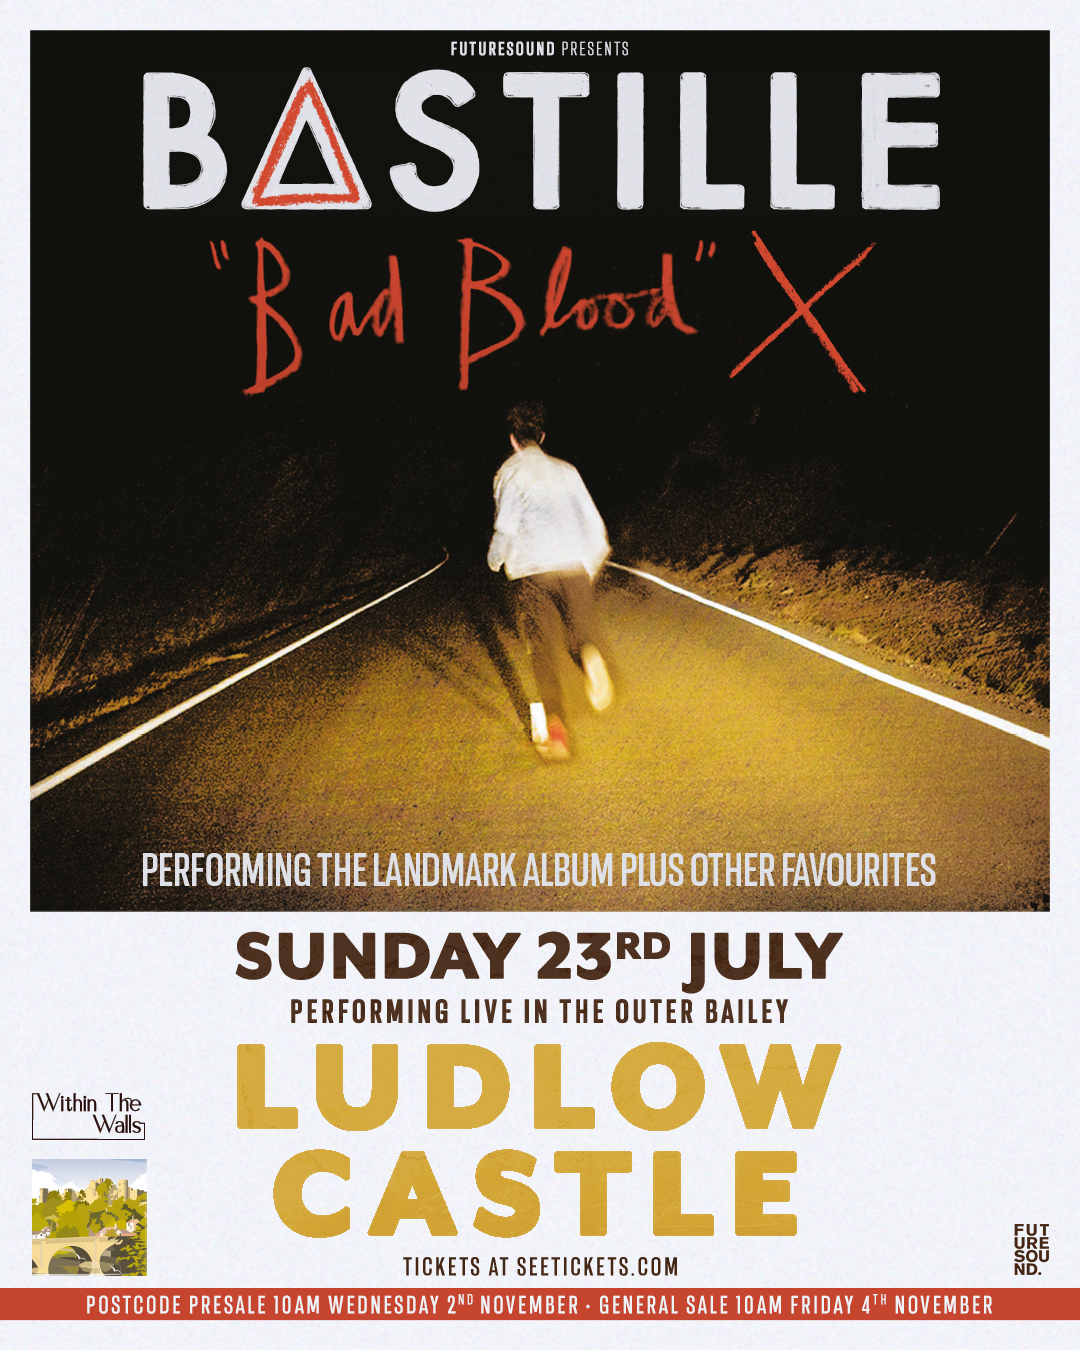 bastille tour ludlow